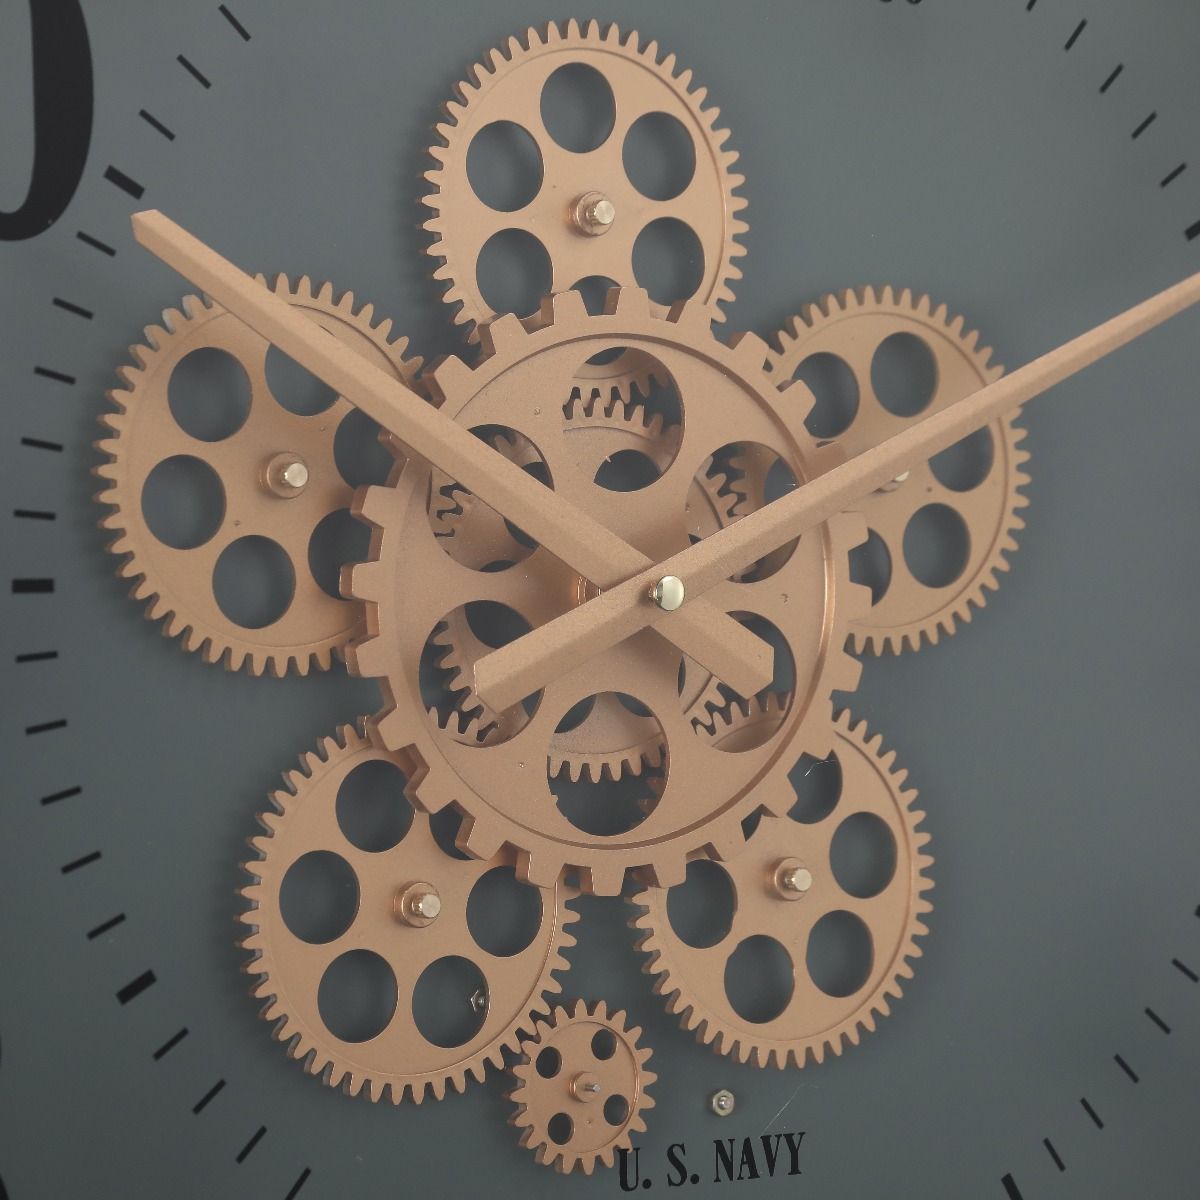 Industrial/vintage-inspired clock range